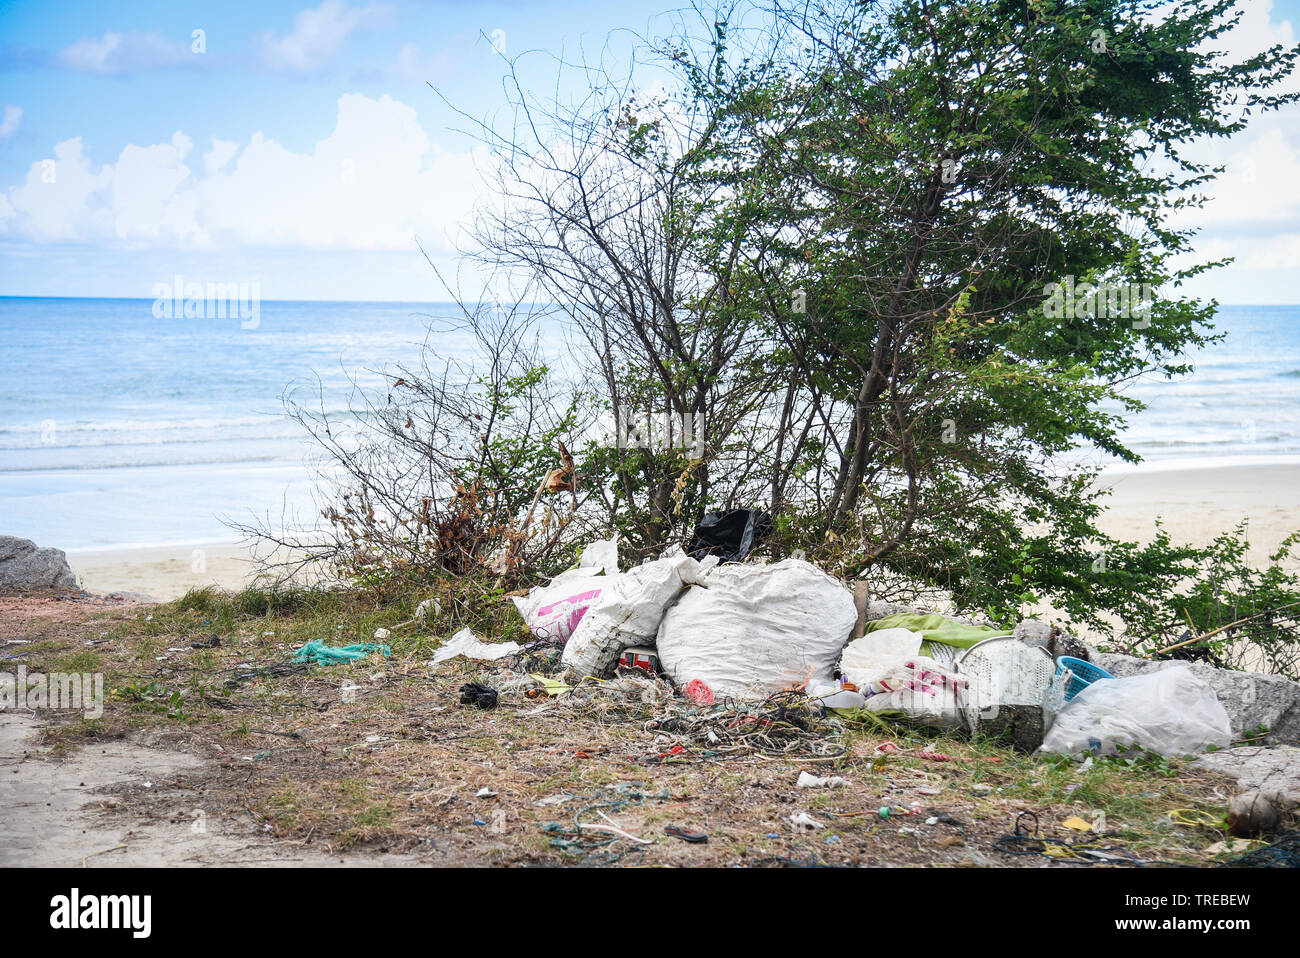 Basura en el mar con bolsa botella de plástico y otras basuras sucias de  arena de playa en la isla de mar / problema ambiental de la contaminación  de basura de plástico